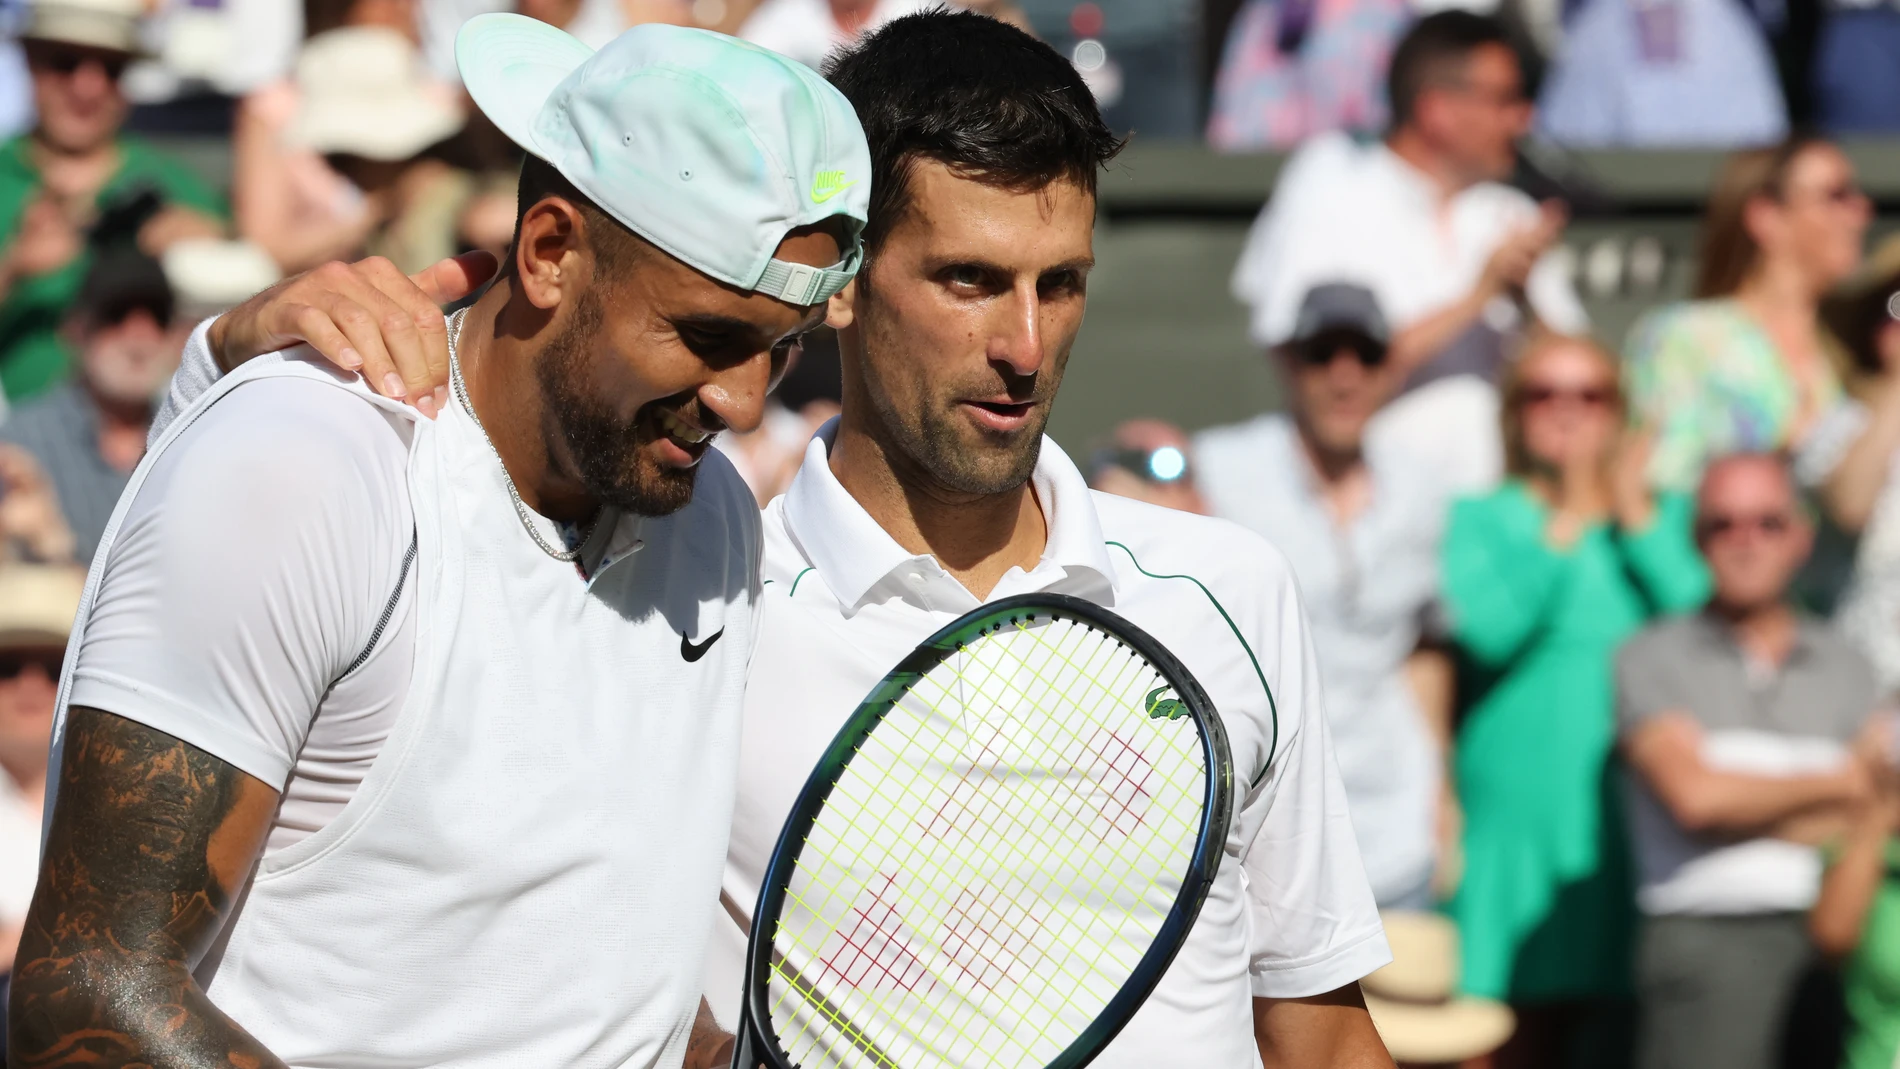 Novak Djokovic ganó a su amigo Nick Kyrgios en la final de Wimbledon